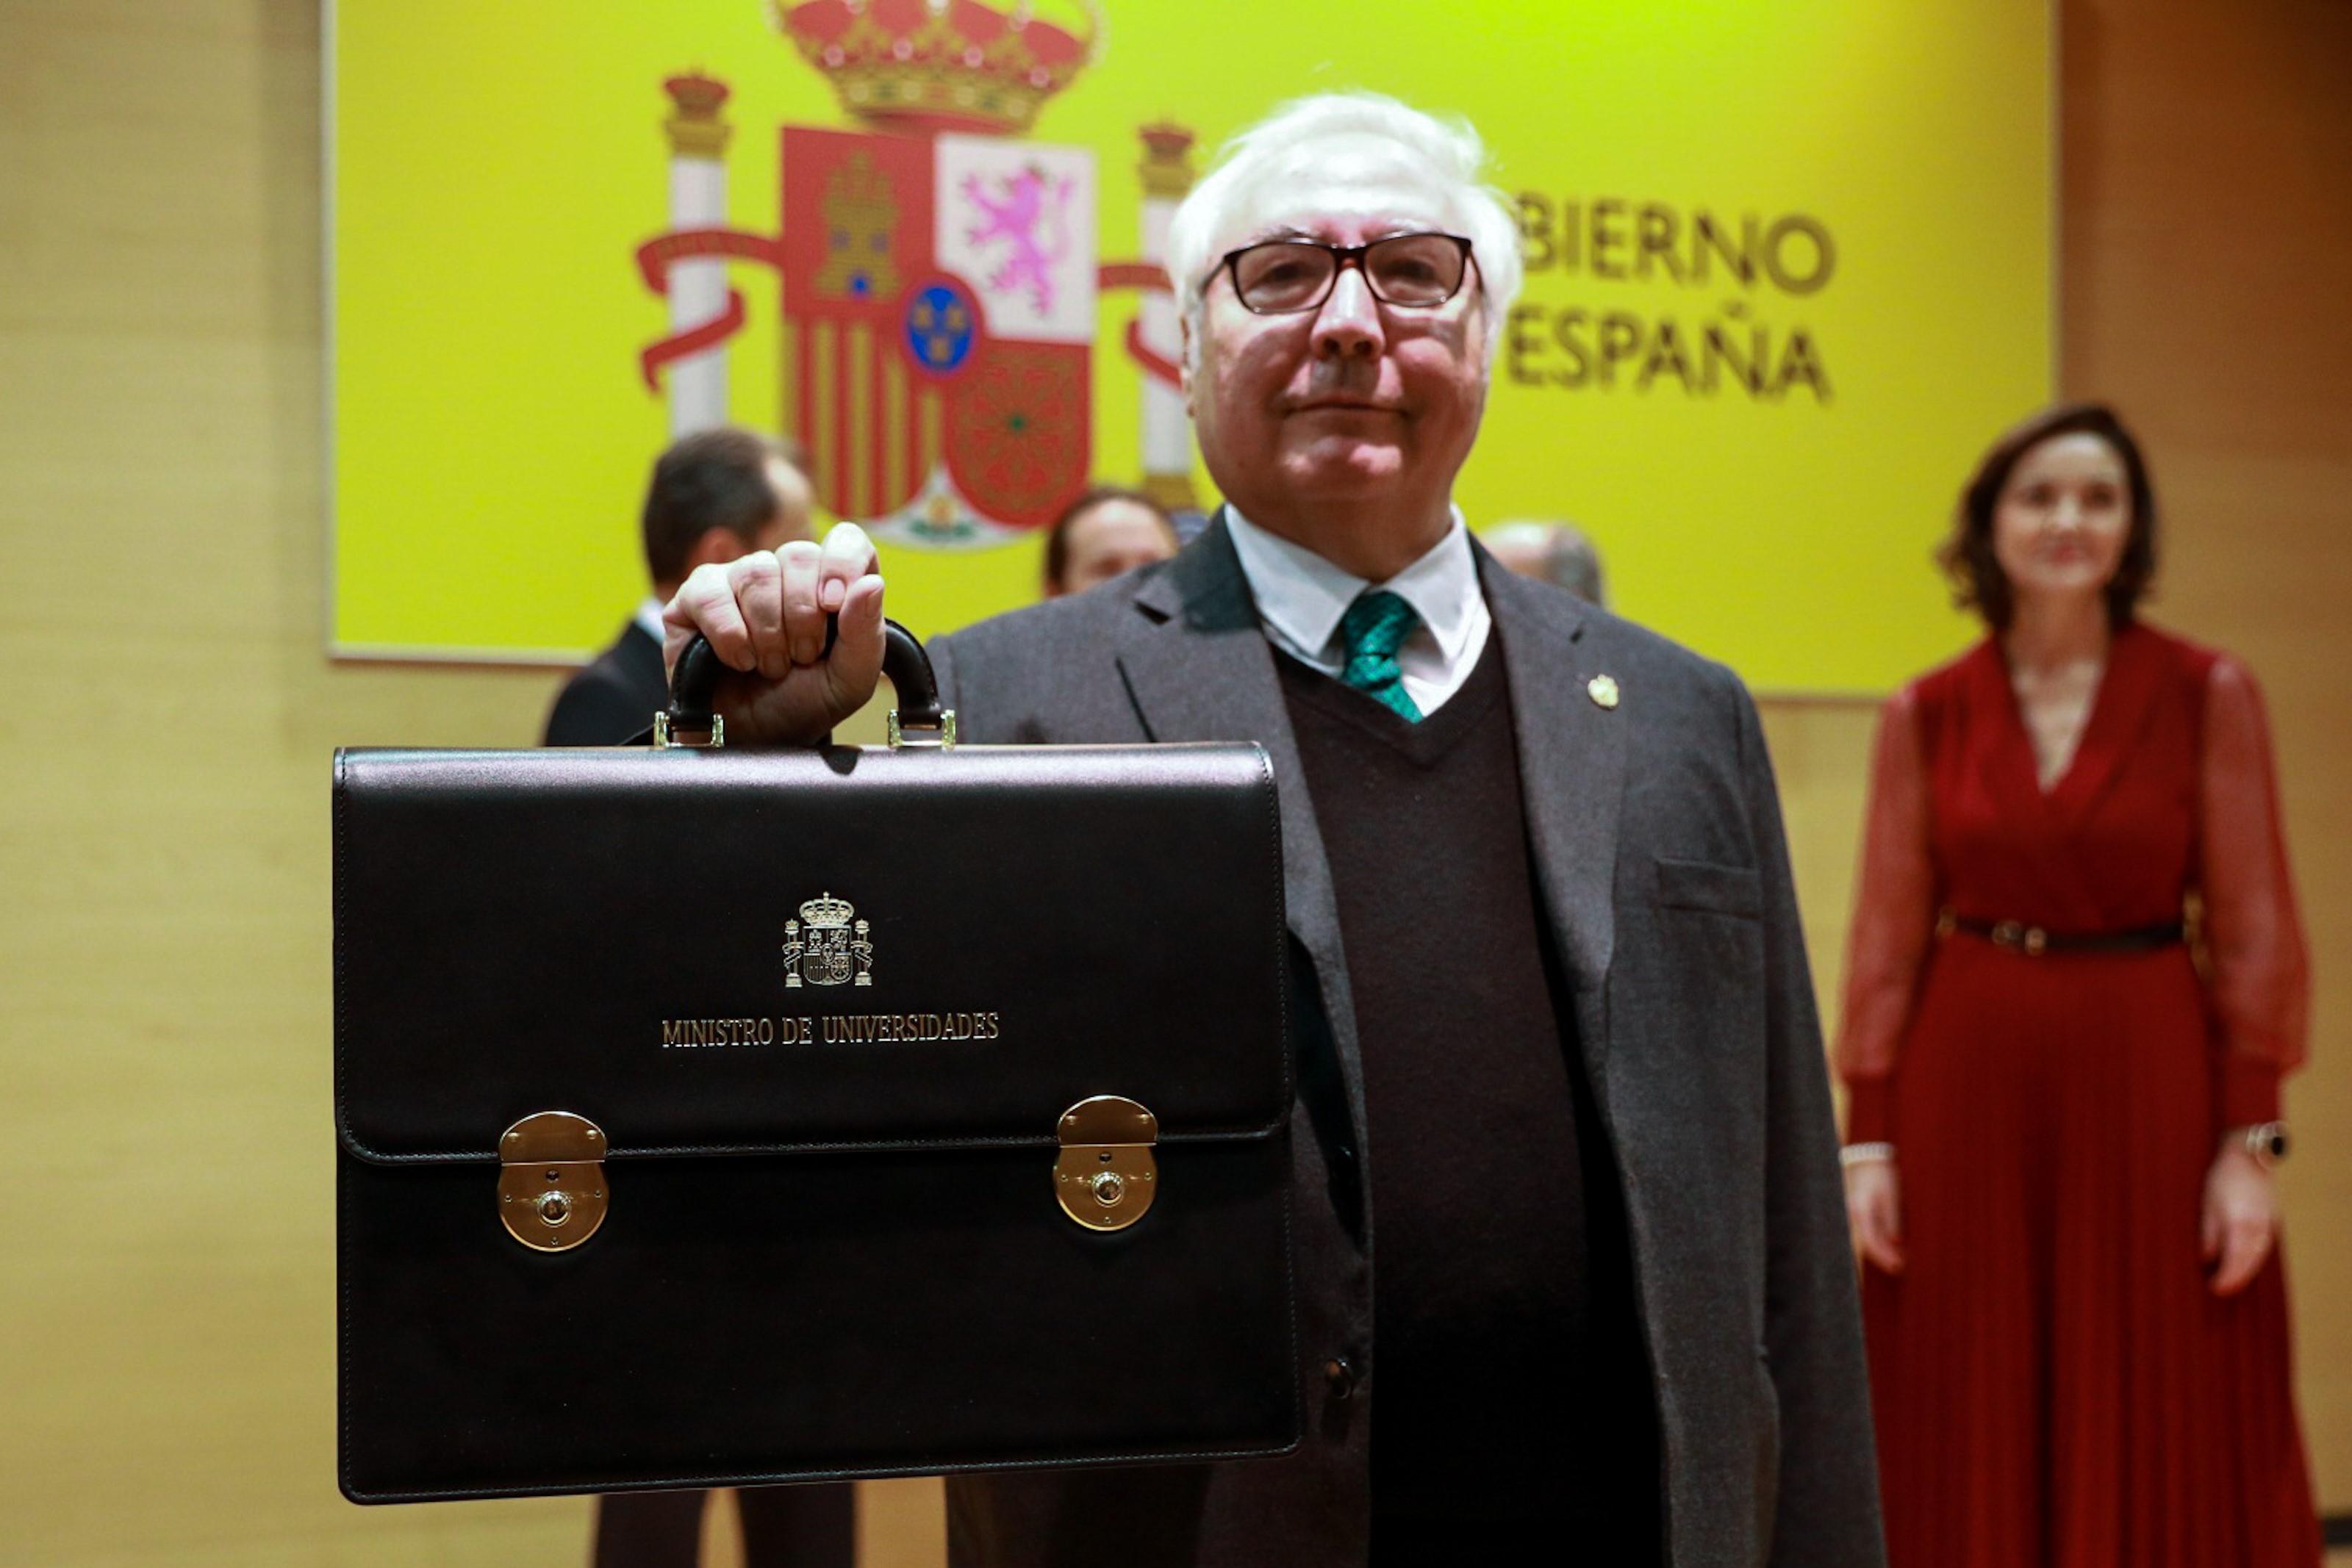 El nuevo ministro de Universidades Manuel Castells muestra la cartera de del ministerio de Universidades durante el acto de toma de posesión de los ministros / EuropaPress 